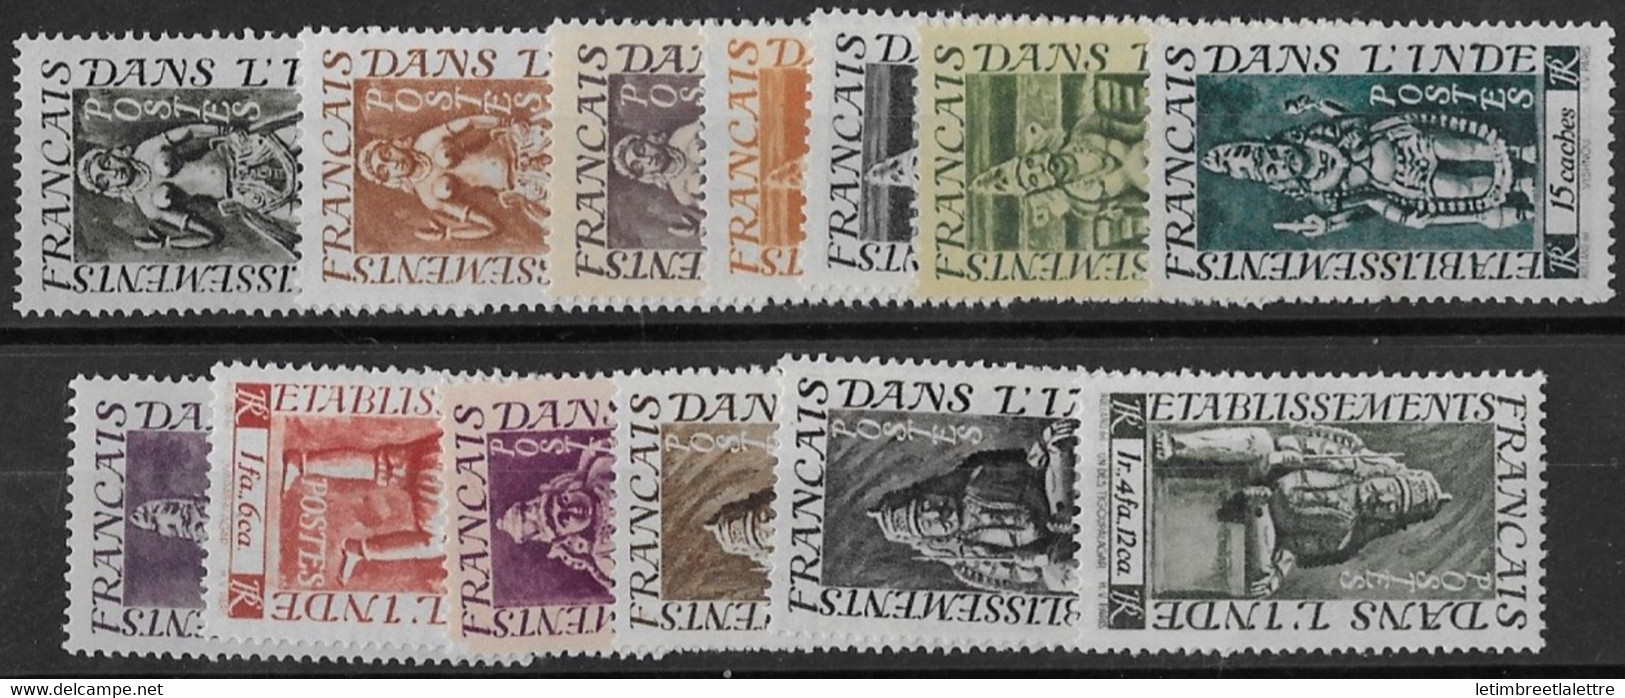 ⭐ Inde - YT N° 236 à 253 ** Sans Les N° 242 / 246 / 247 / 248 Et 249 - Neuf Sans Charnière - 1948 ⭐ - Unused Stamps